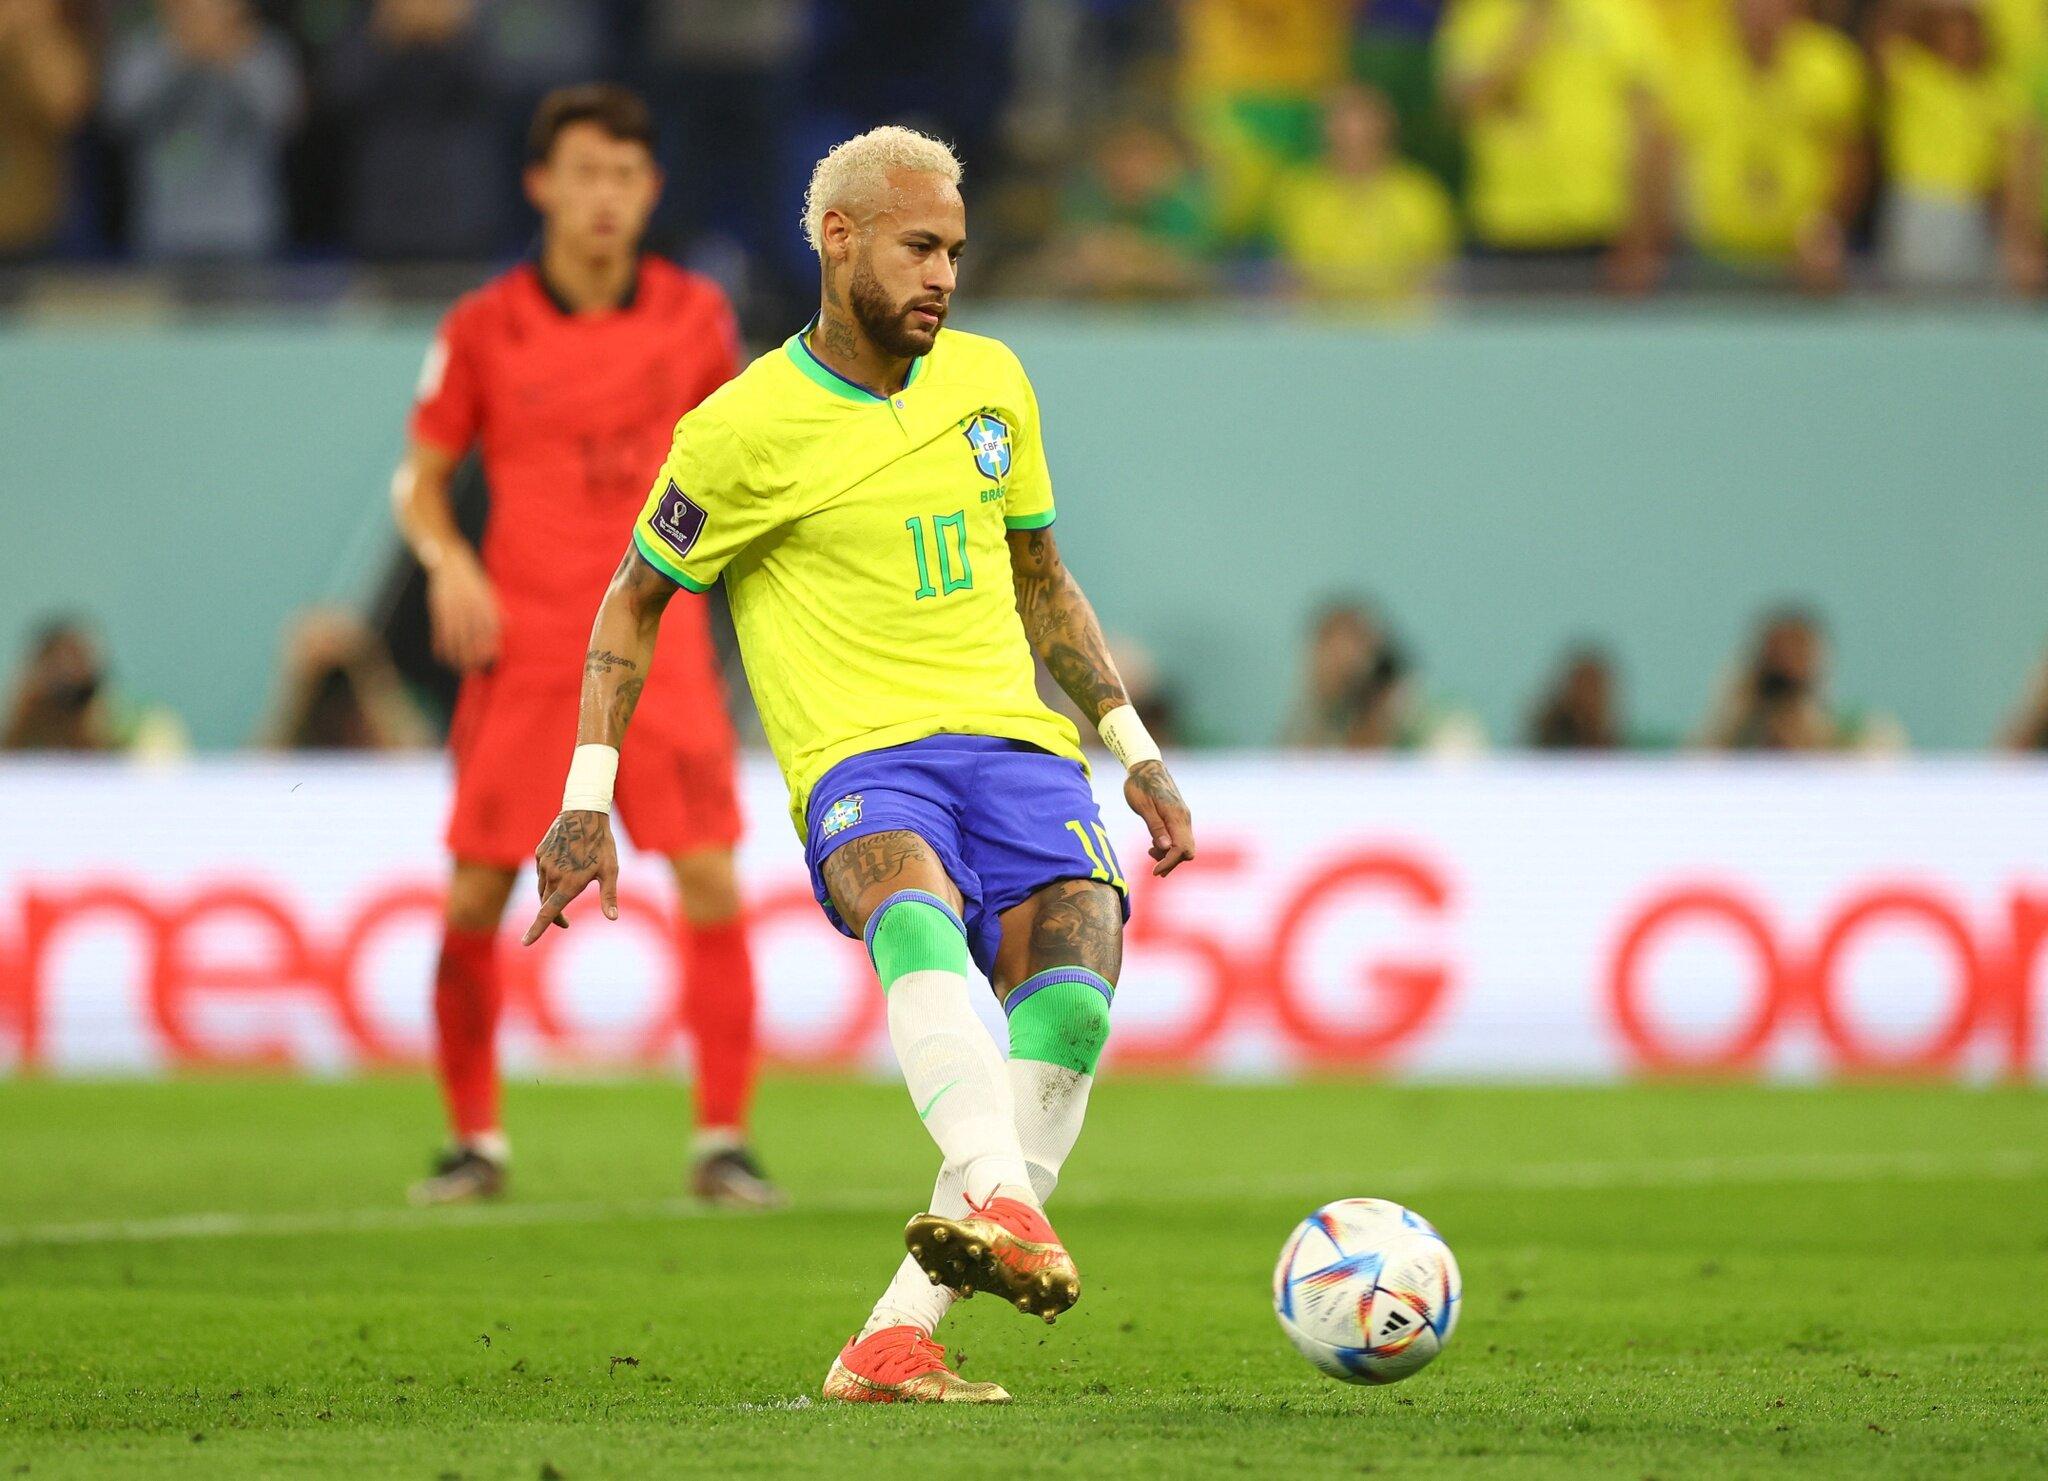 Pha đặt lòng lạnh lùng của Neymar đã giúp Brazil có được 2 bàn thắng chỉ sau 15 phút thi đấu (Ảnh: Internet)